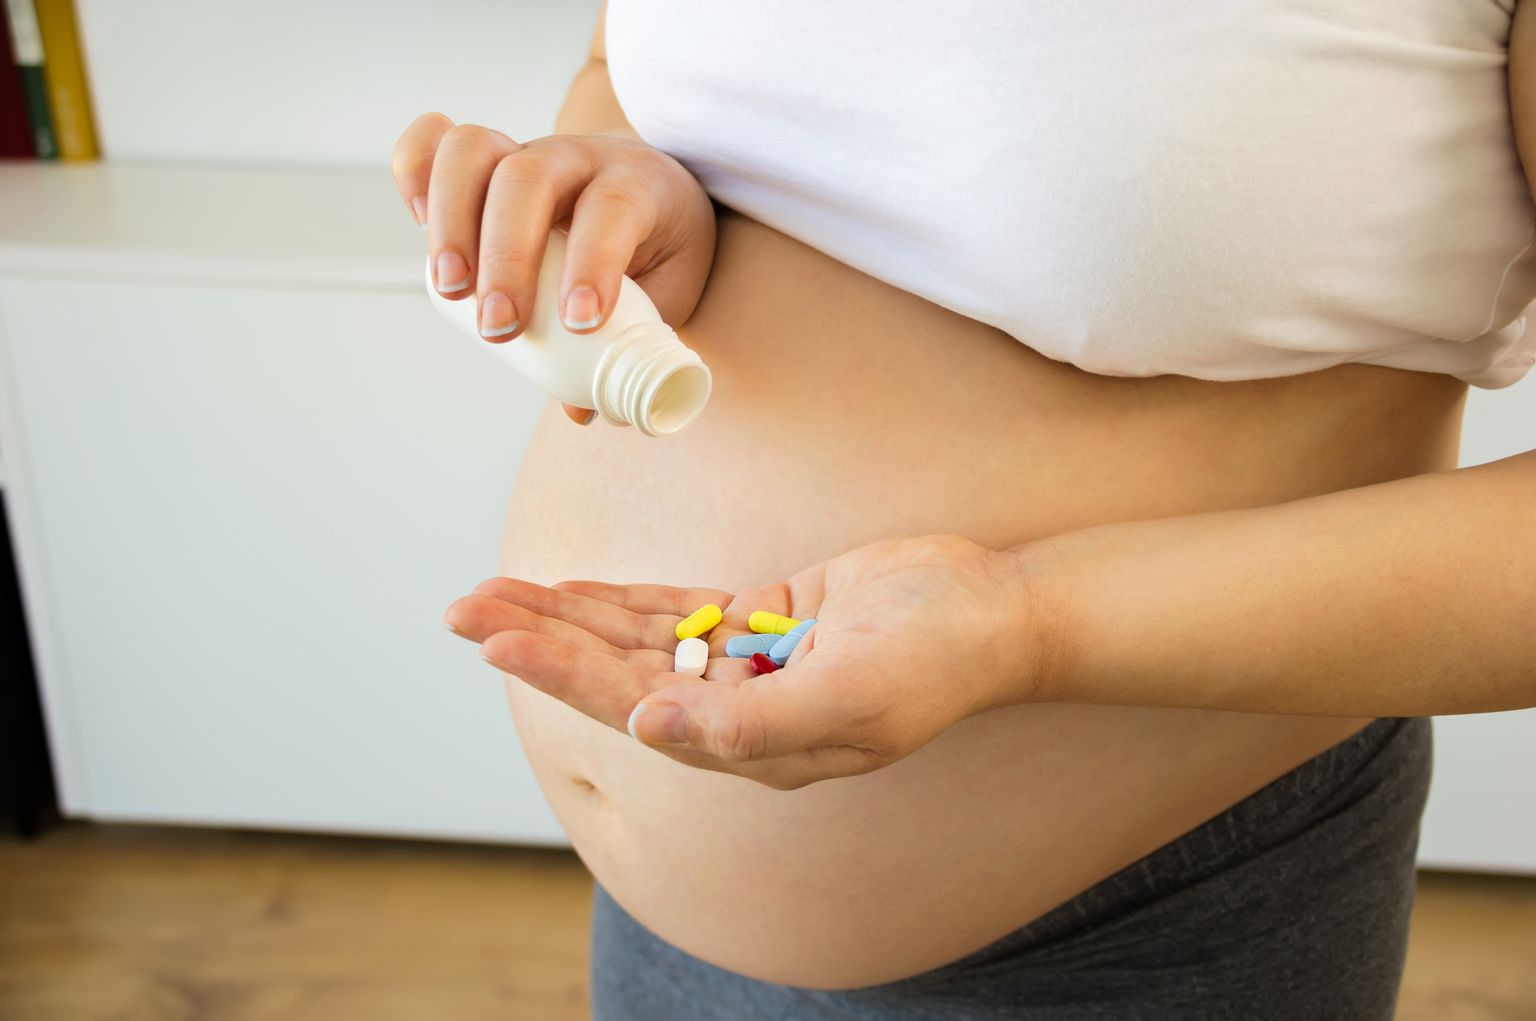 Tomar medicamentos durante el embarazo